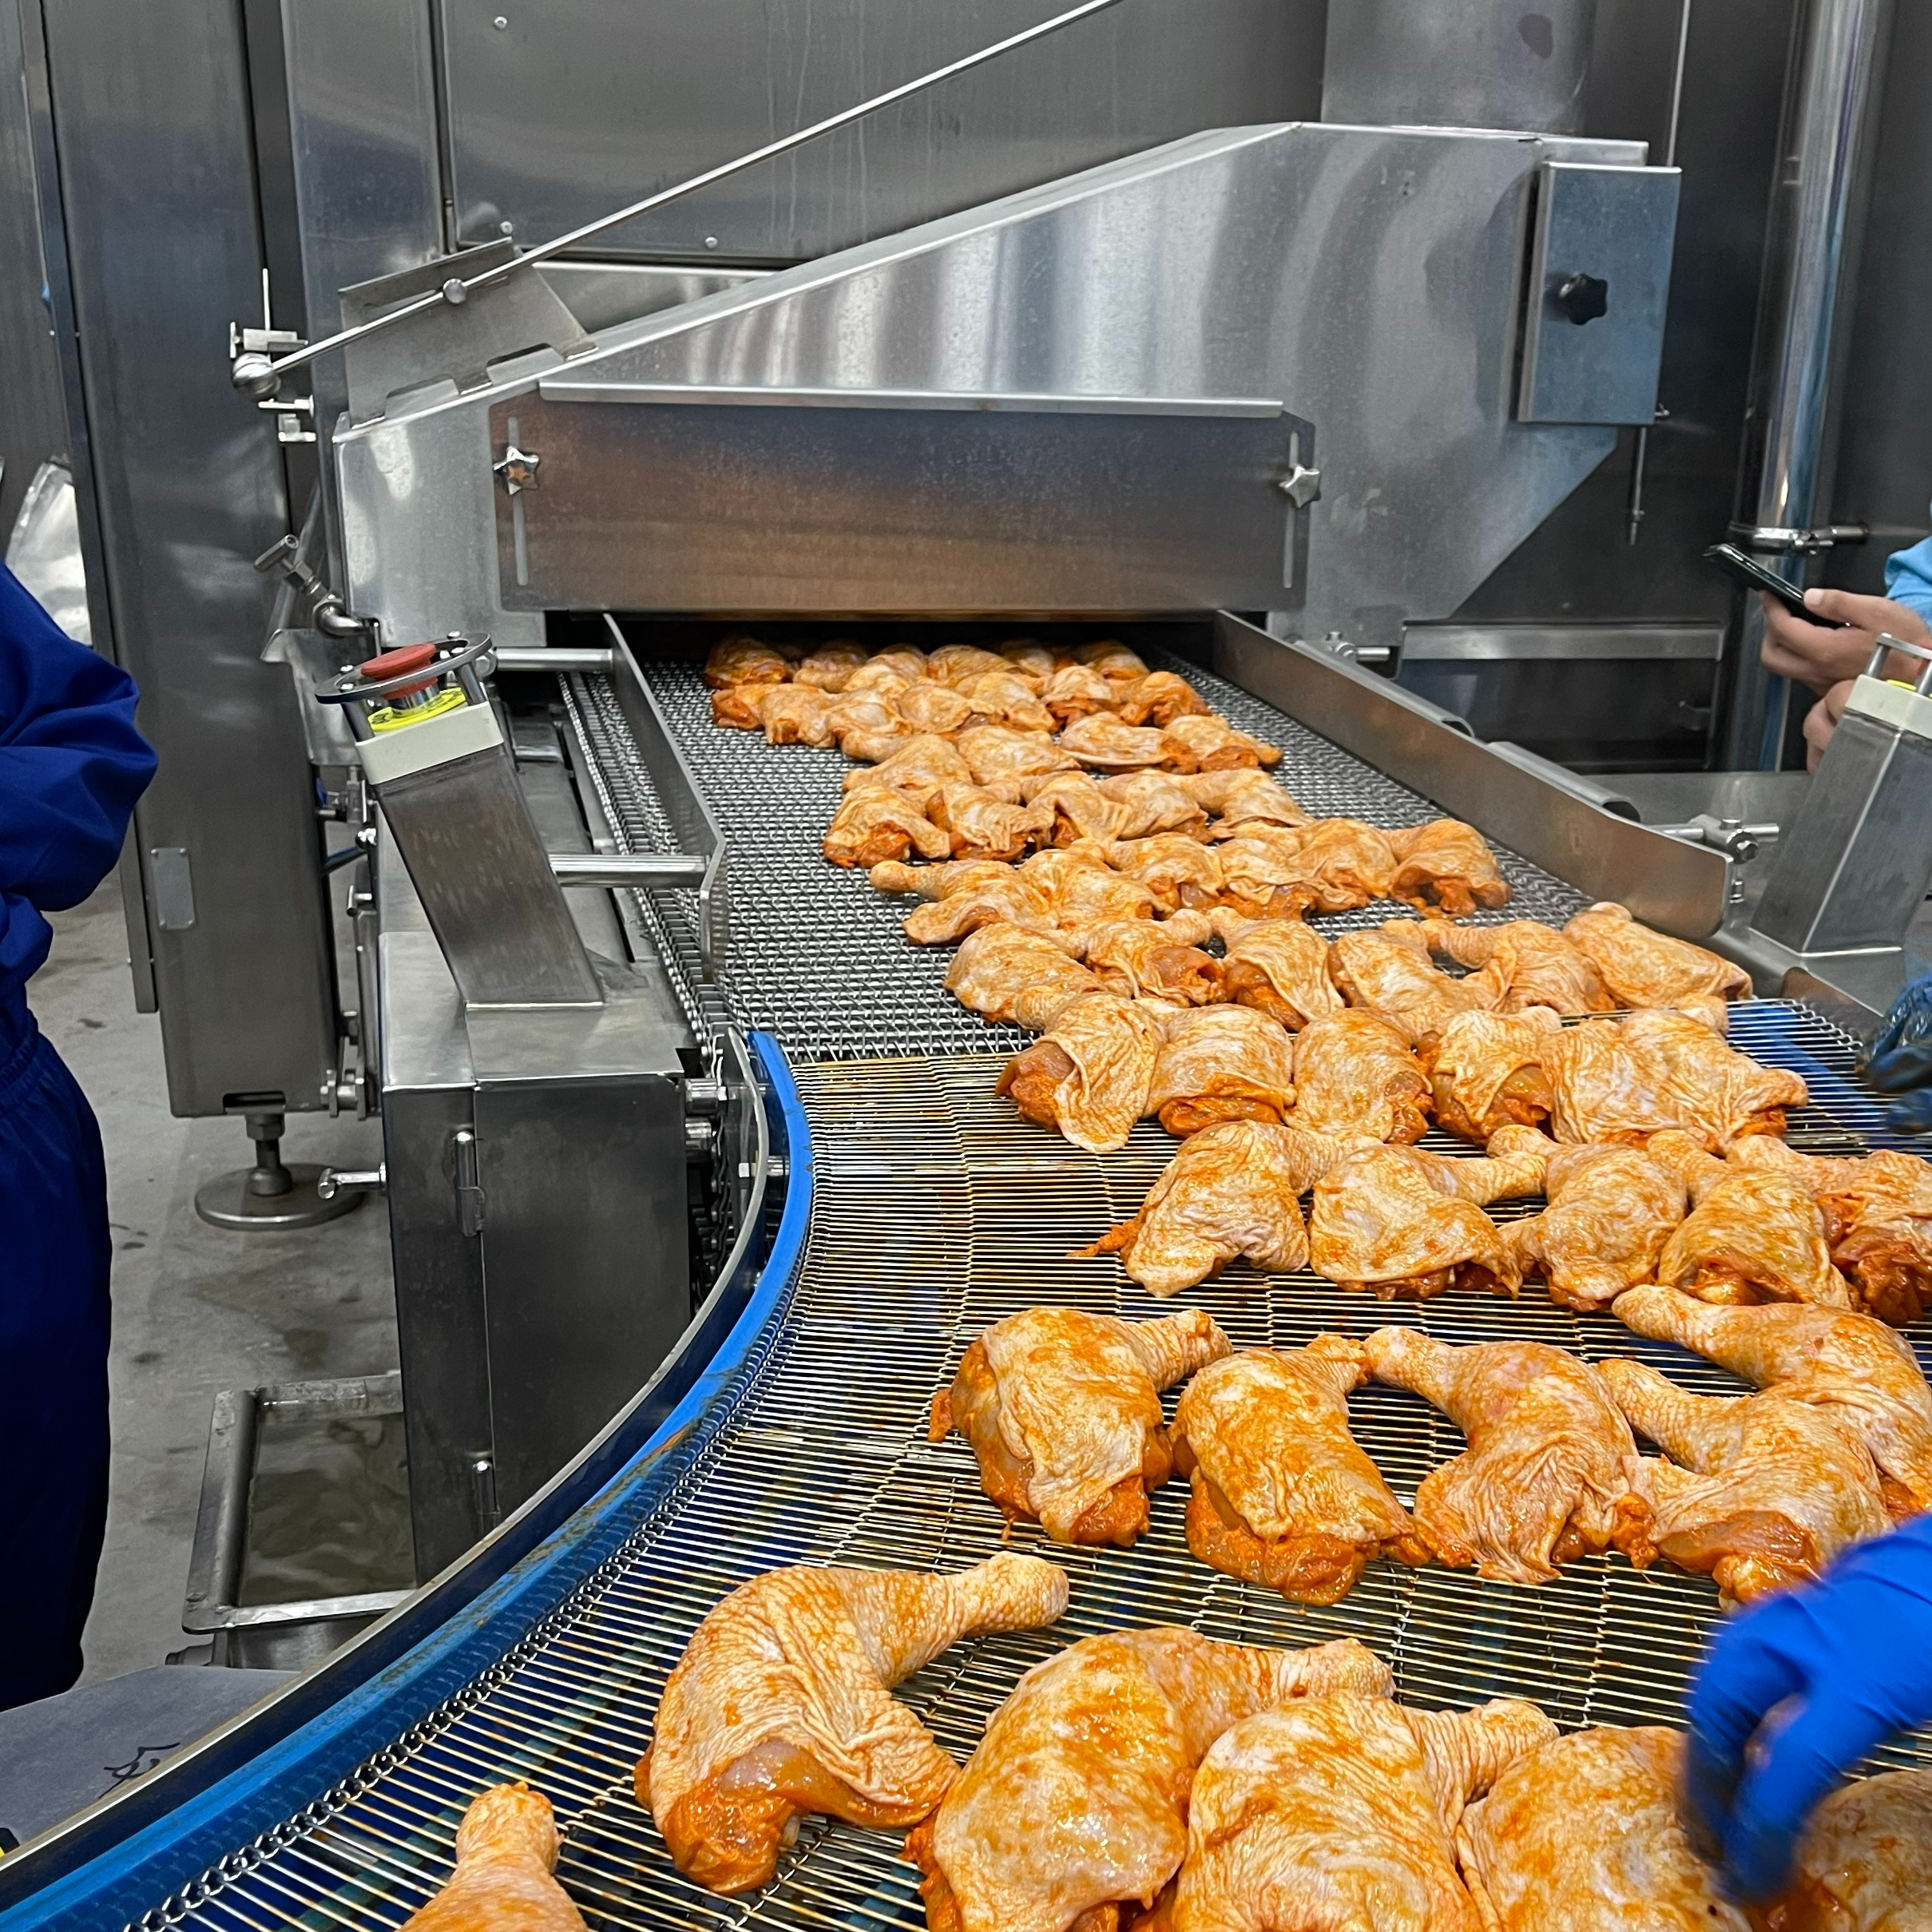 中国工厂 禽肉产品全熟线-油炸机、螺旋蒸烤机、自堆式速冻机